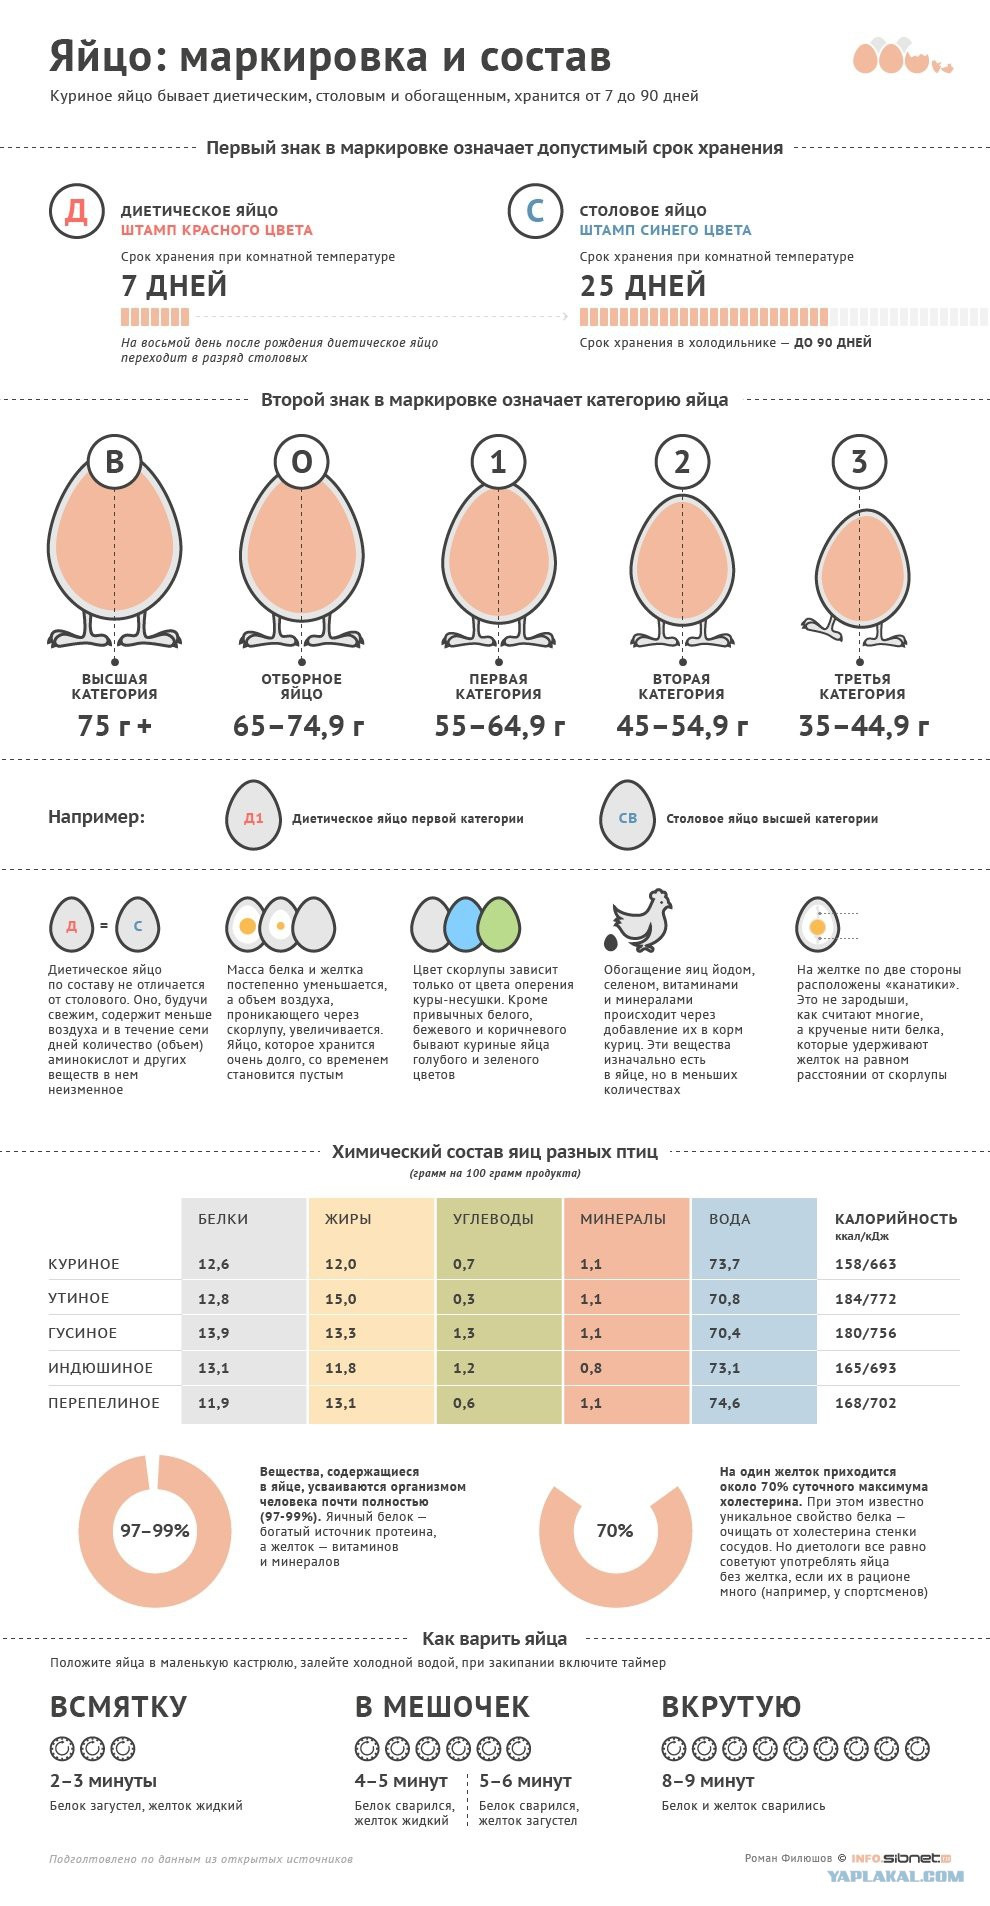 Килокалории куриного яйца. Яйцо куриное категория с1 калорийность. БЖУ яйцо куриное с1. Калорийность яйца первой категории. Энергетическая ценность яйца куриного.